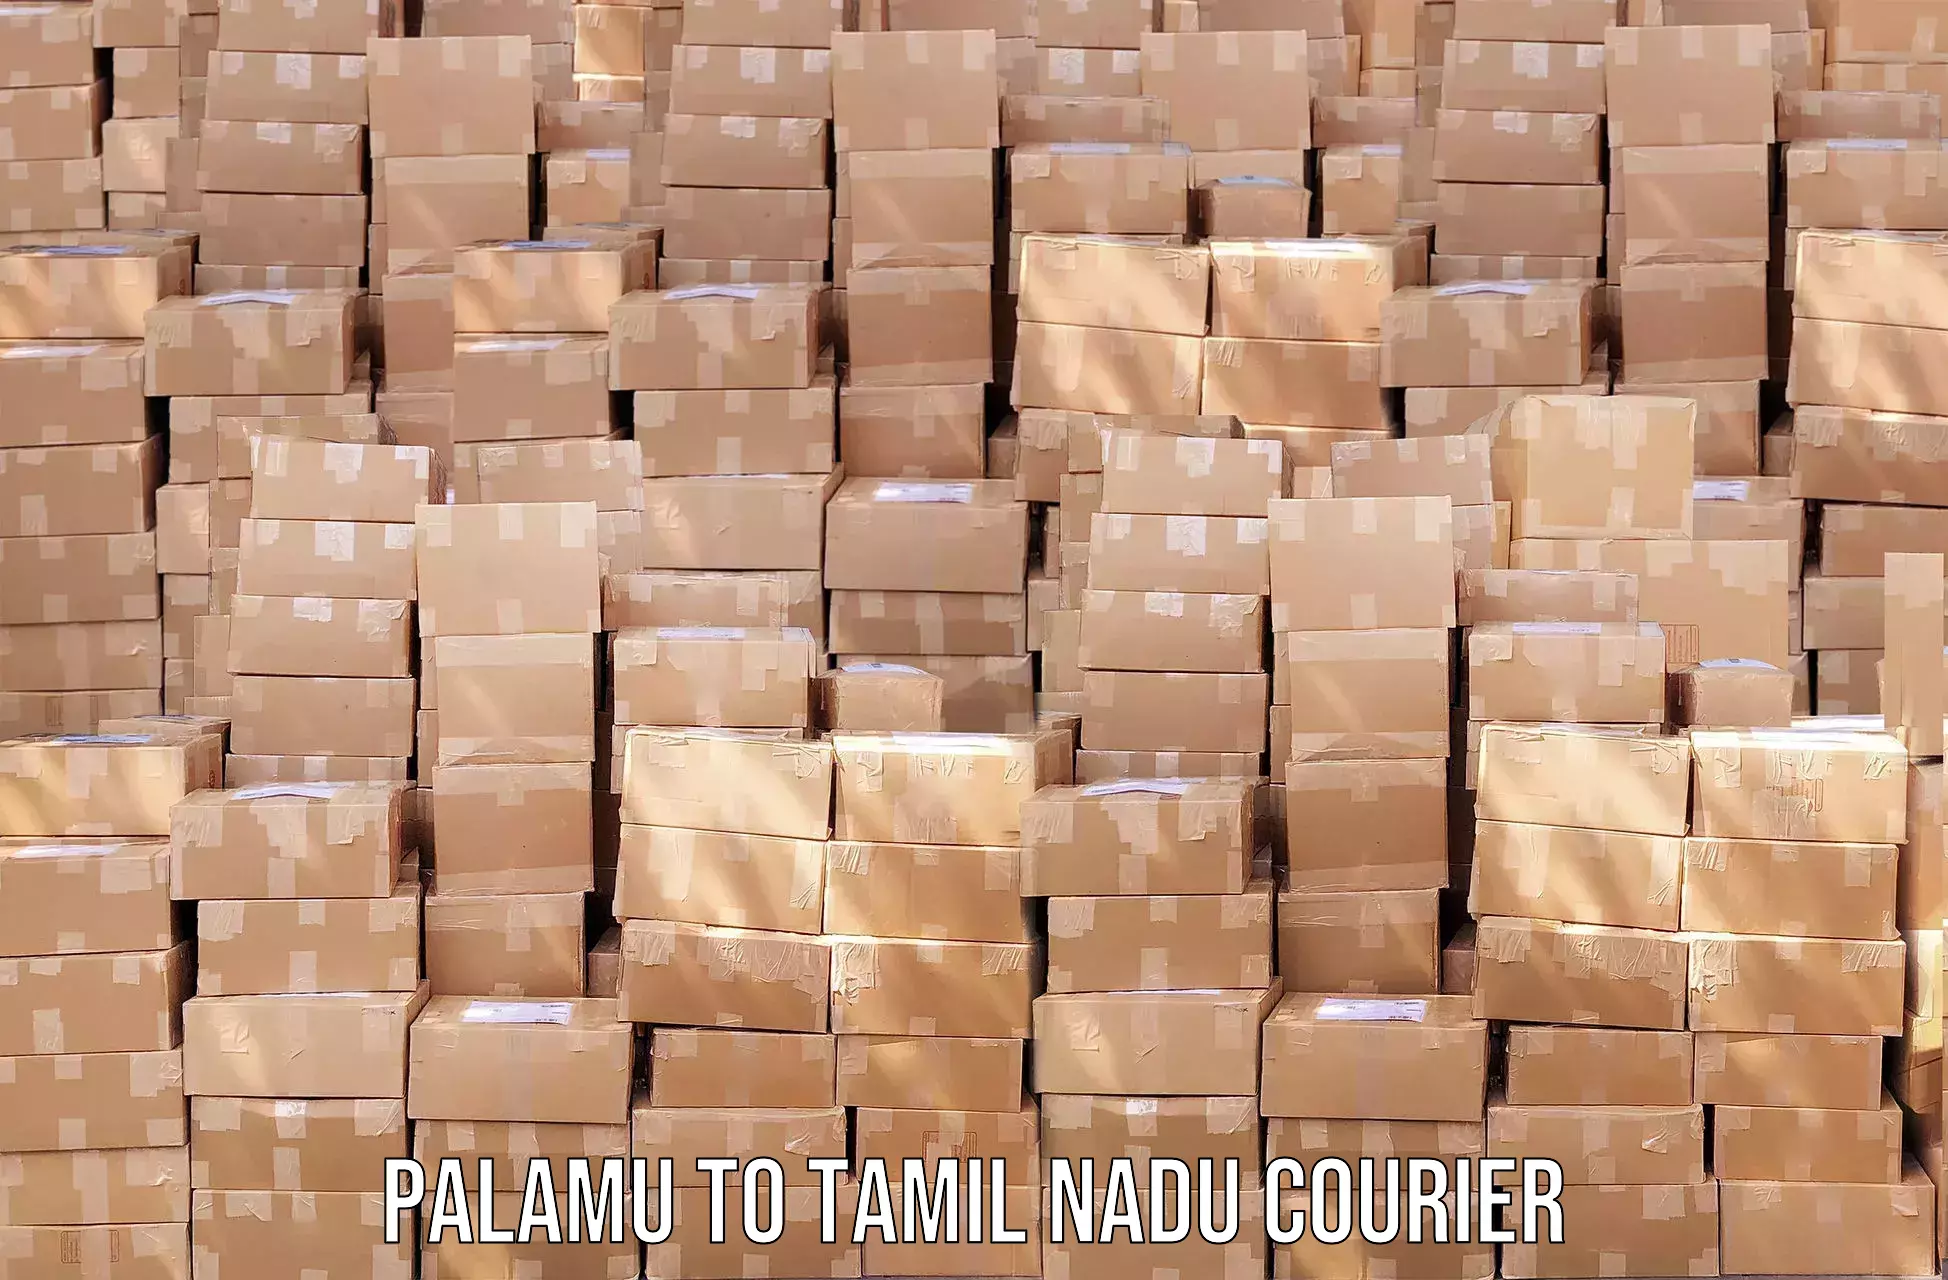 Nationwide parcel services Palamu to Palani